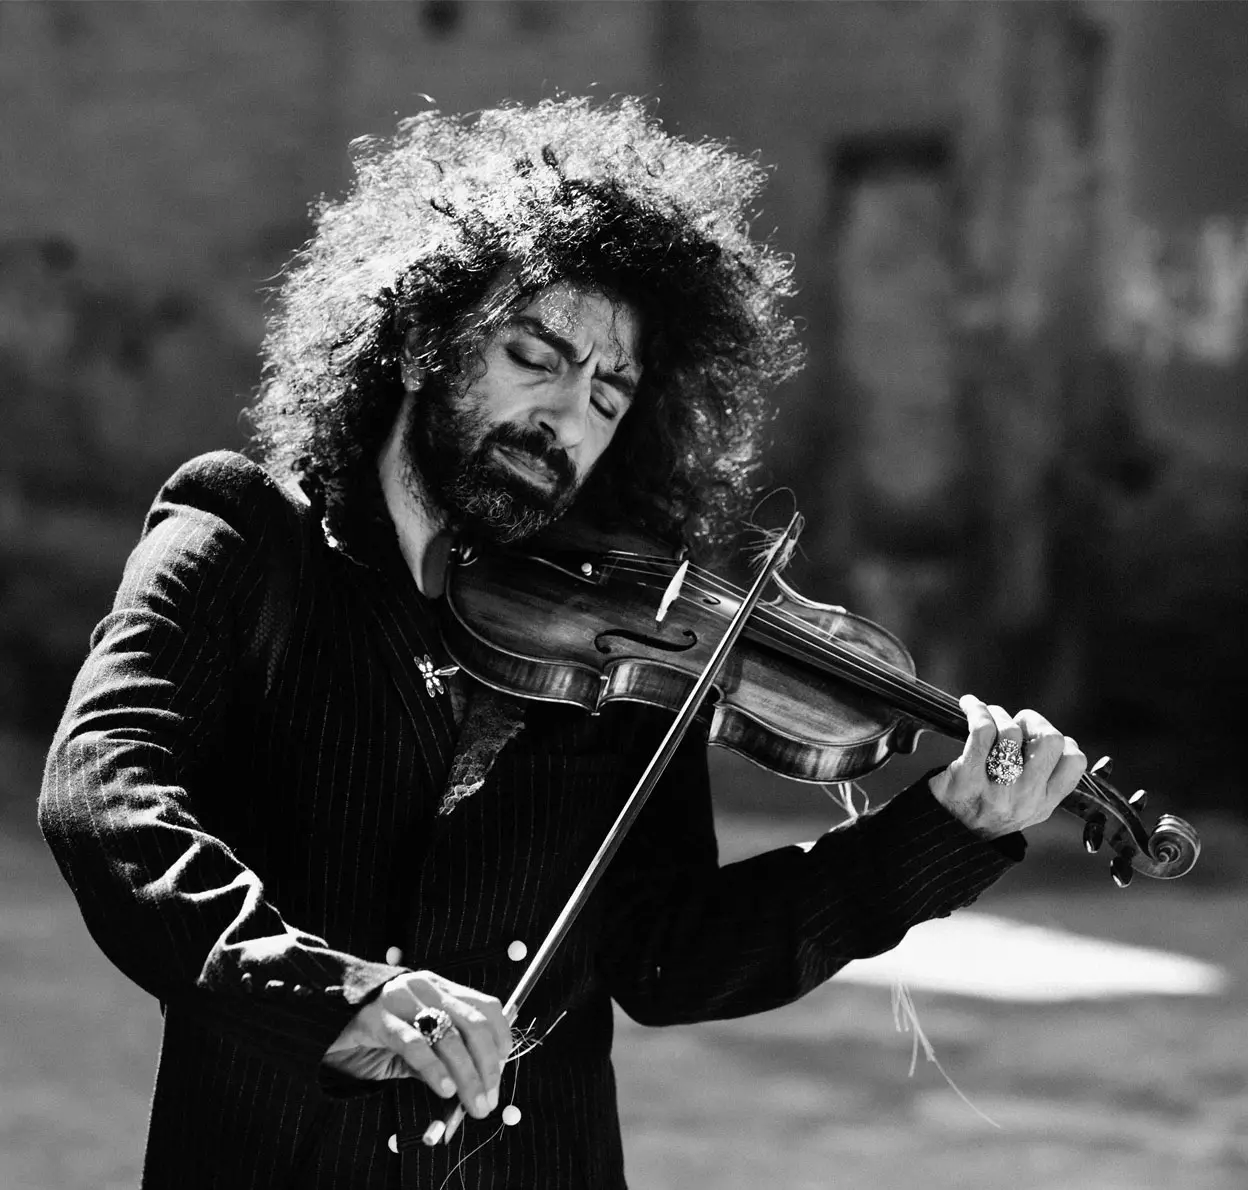 talentoso violinista libanes - Dónde vive el violinista Ara Malikian